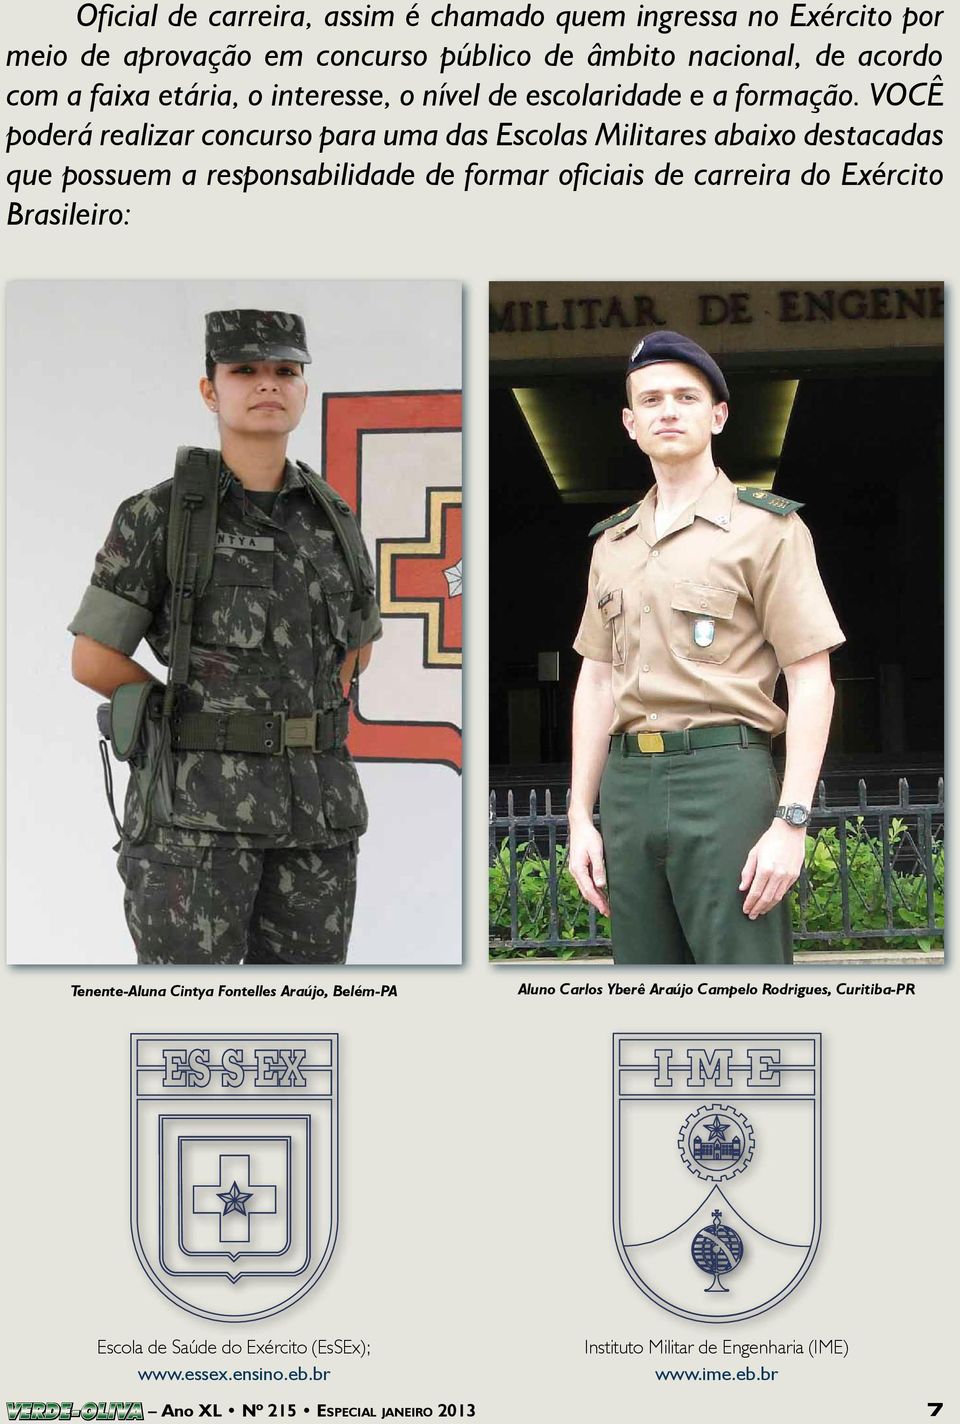 VOCÊ poderá realizar concurso para uma das Escolas Militares abaixo destacadas que possuem a responsabilidade de formar oficiais de carreira do Exército